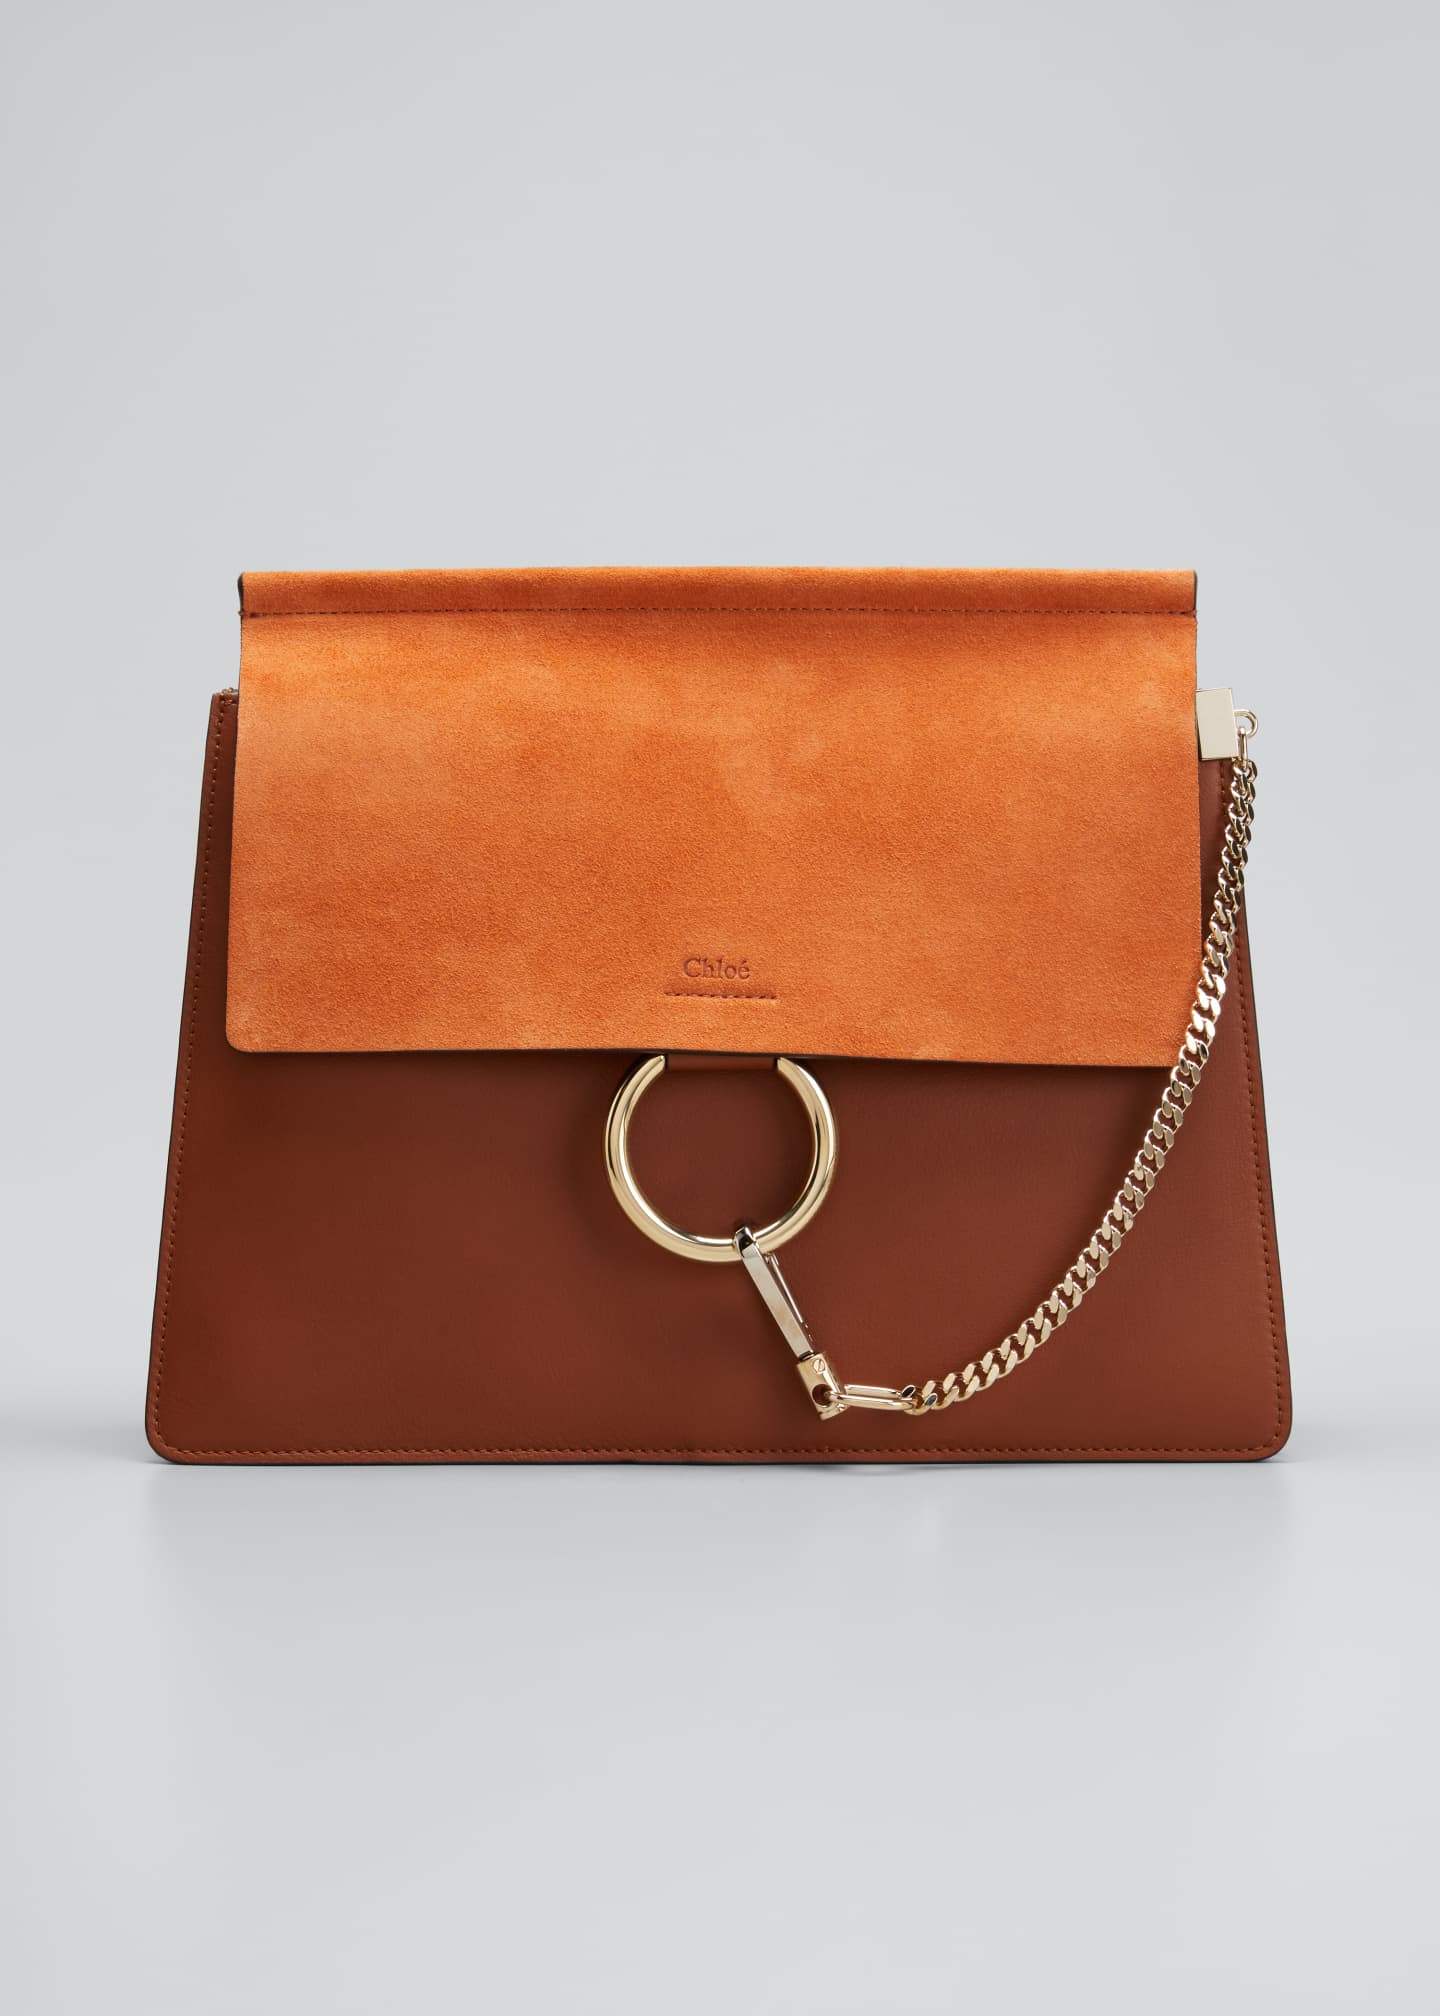 Valentino Handbags : Clutch & Shoulder Bags at Bergdorf Goodman